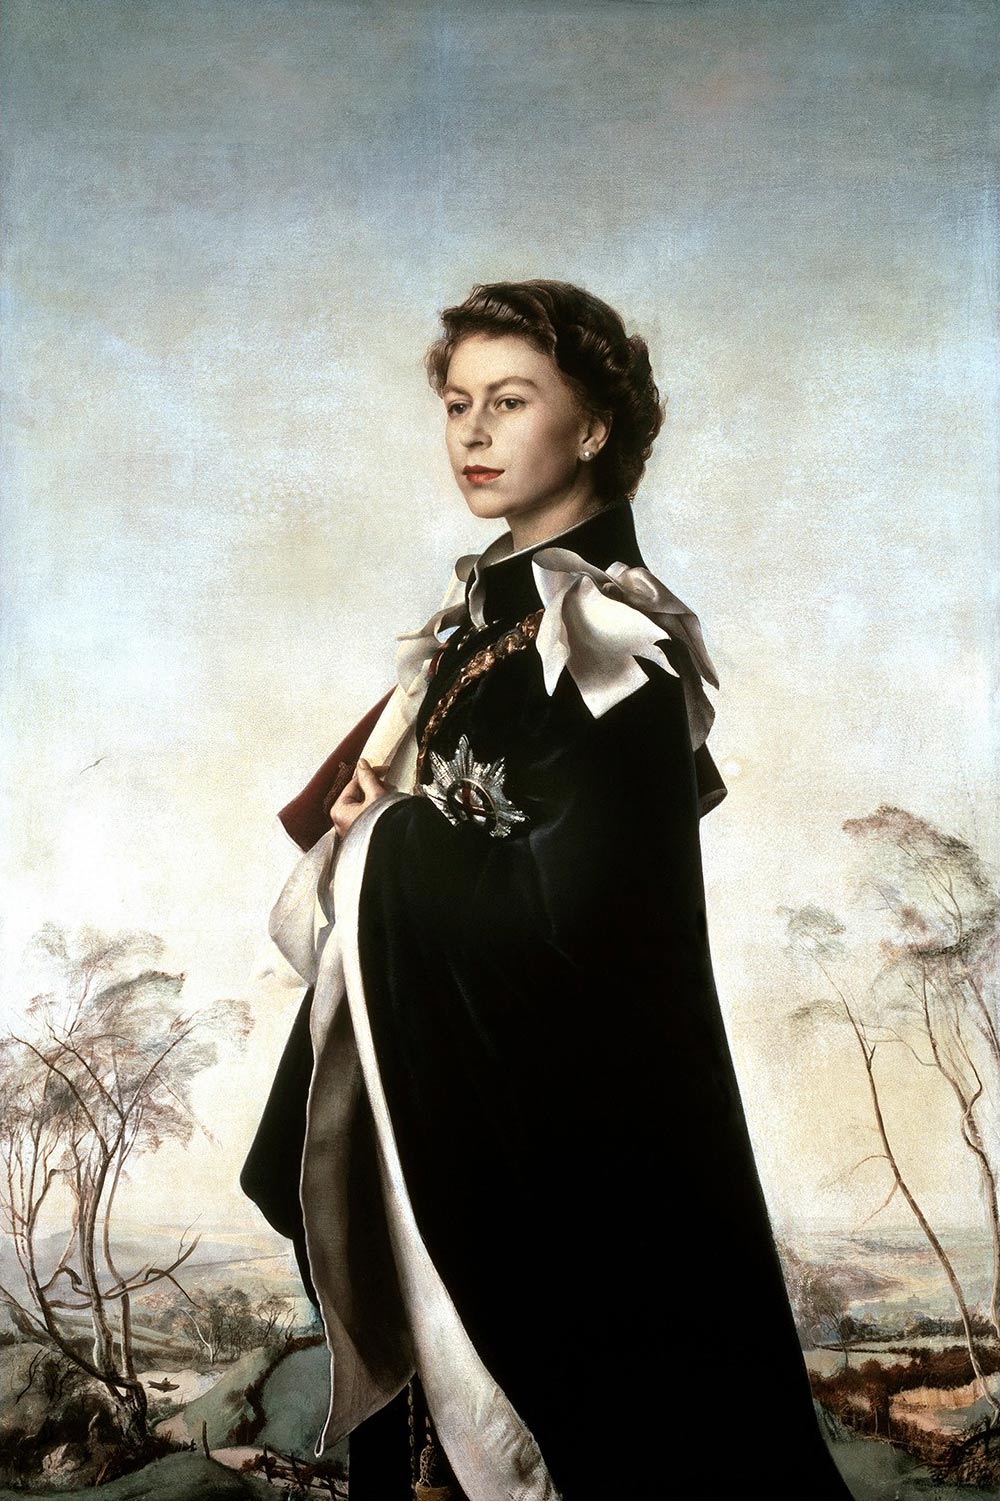 Pietro Annigoni, Ritratto di Elisabetta II d'Inghilterra (1955; tempera, olio e inchiostro su carta, 182,9 x 121,9 cm; Londra, Fishmongers' Hall)